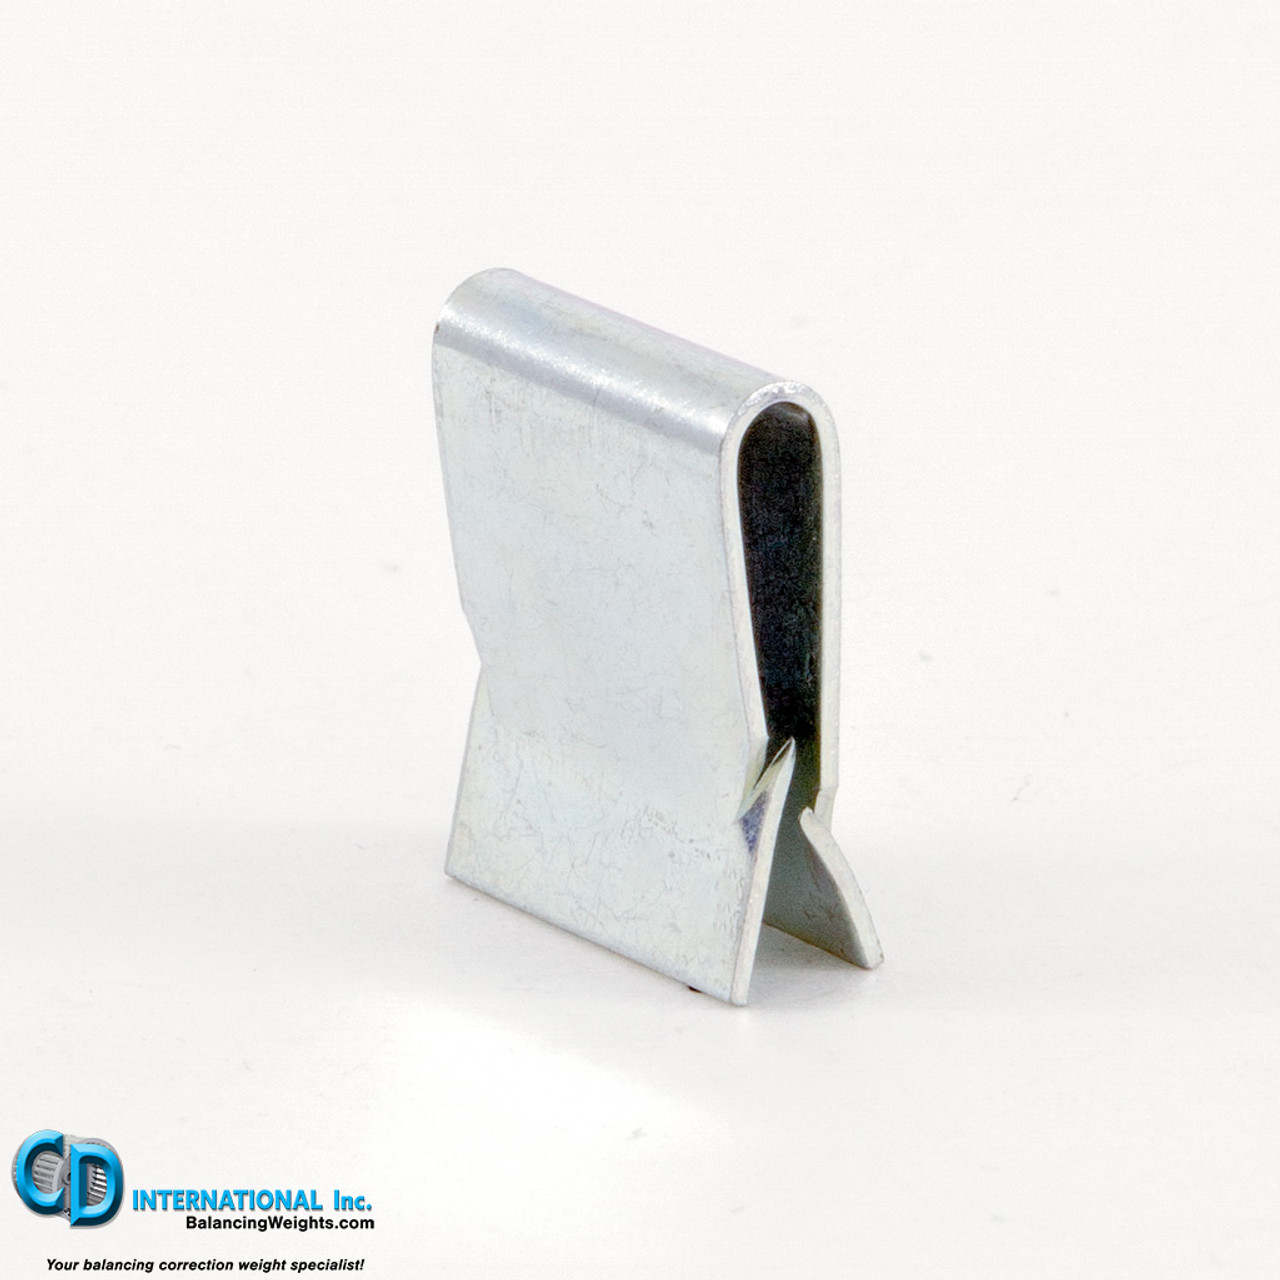 3.6 gram backward incline fan balancing clip